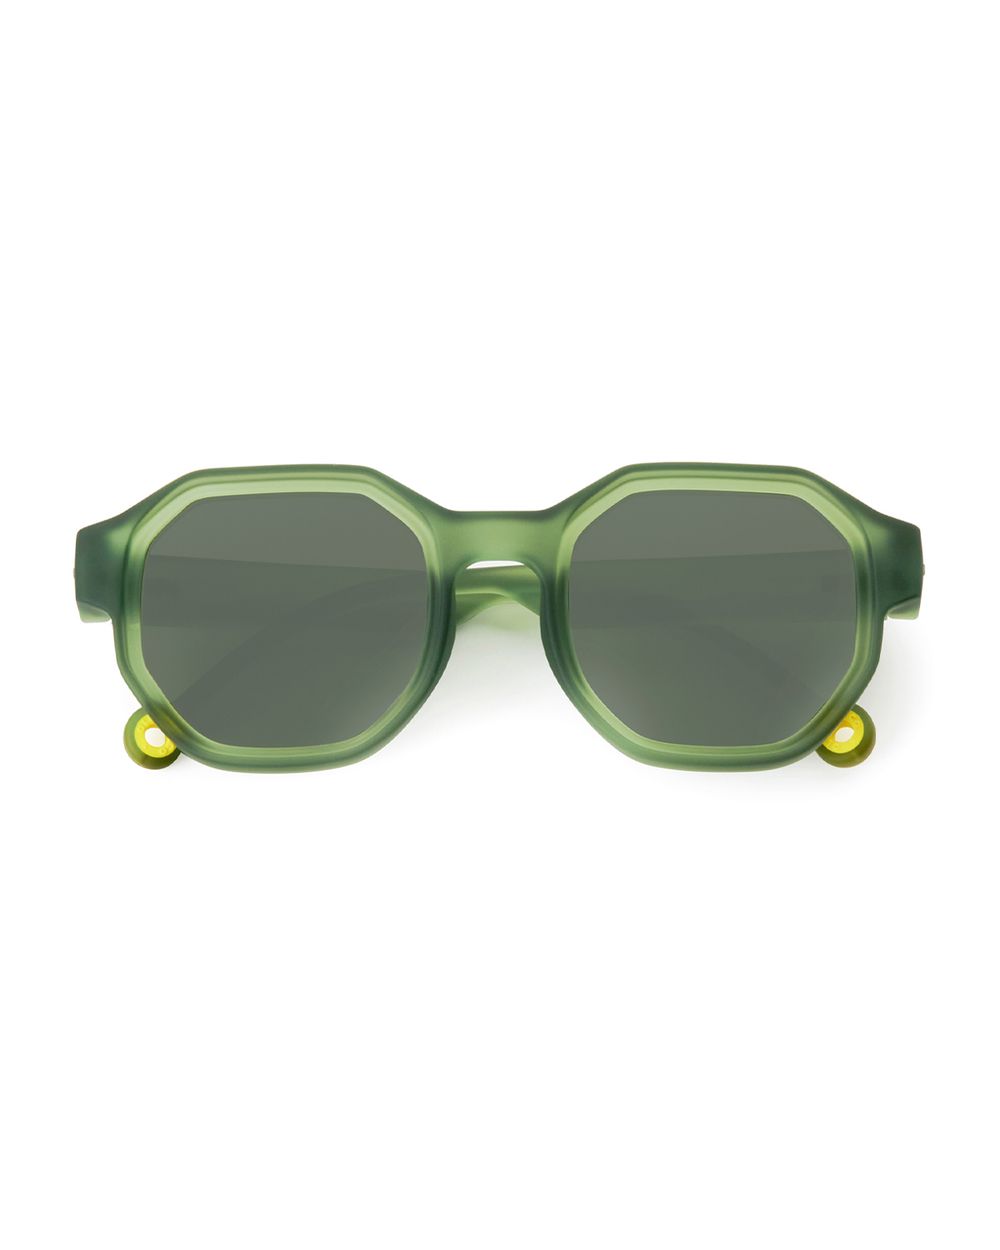 Junior, Adult Sunglasses Olive Green #D